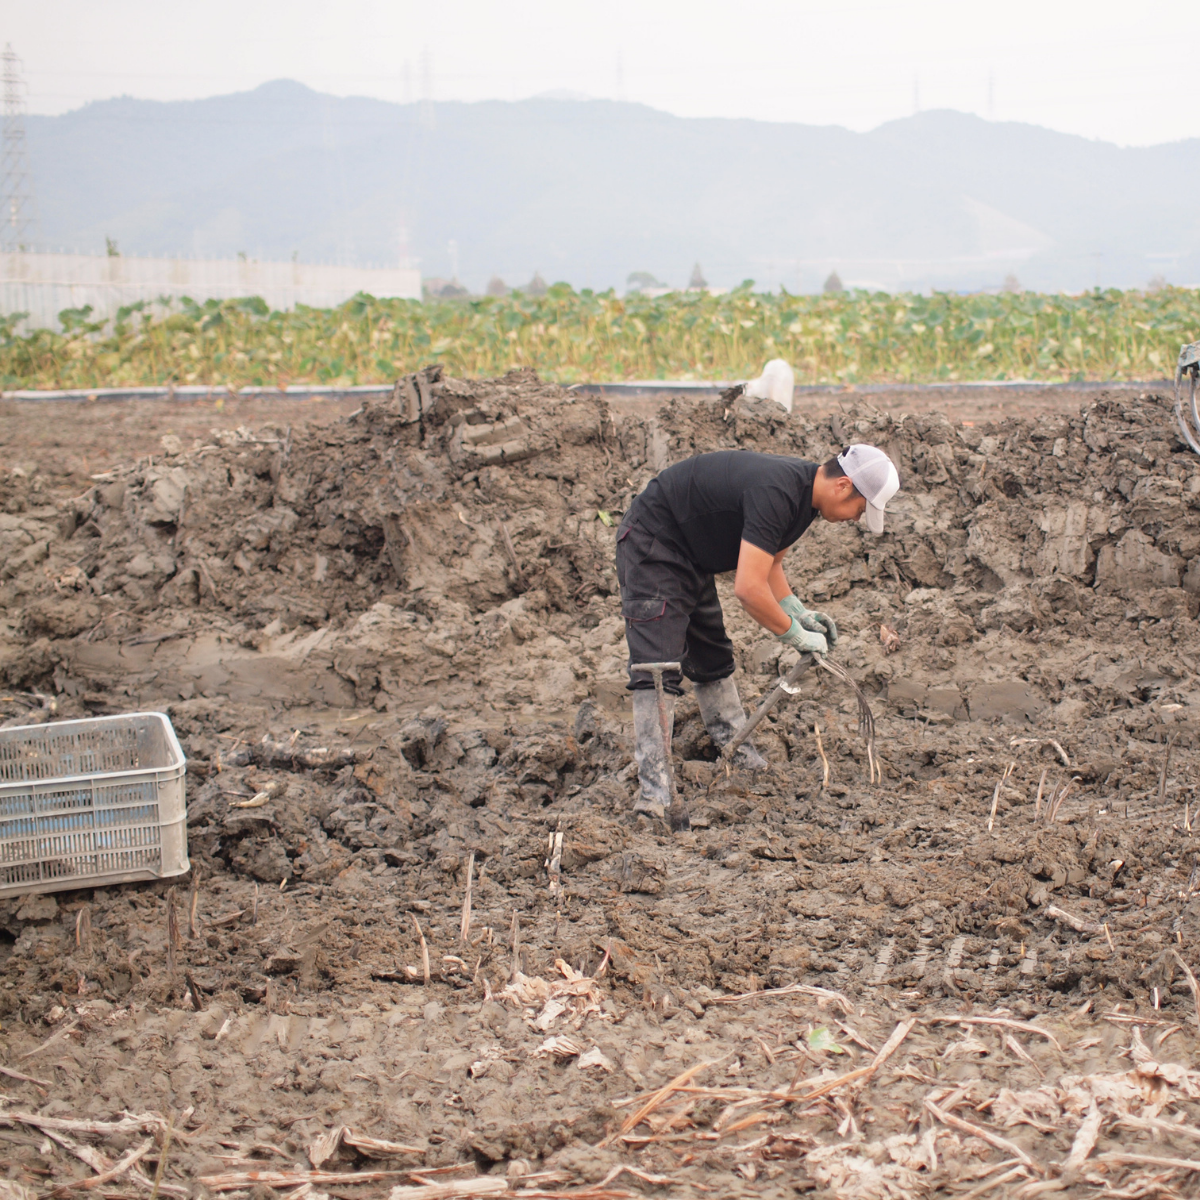 Man picking up lotus root in field